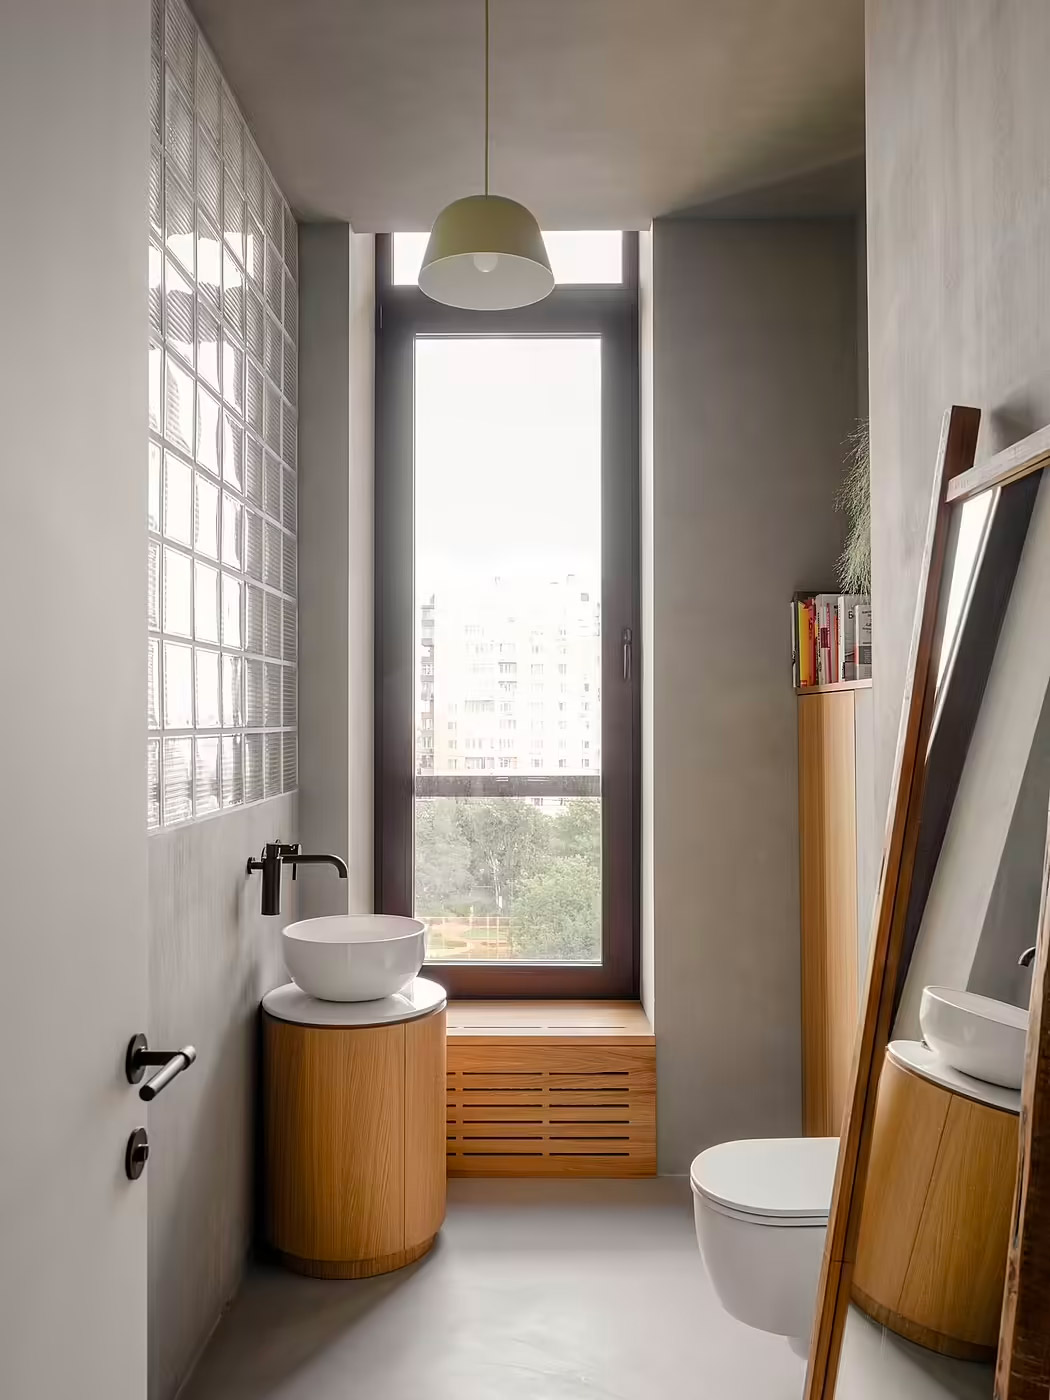 Een modern Japans badkamerontwerp met een betonnen vloer en wanden, gecombineerd met houten meubels.